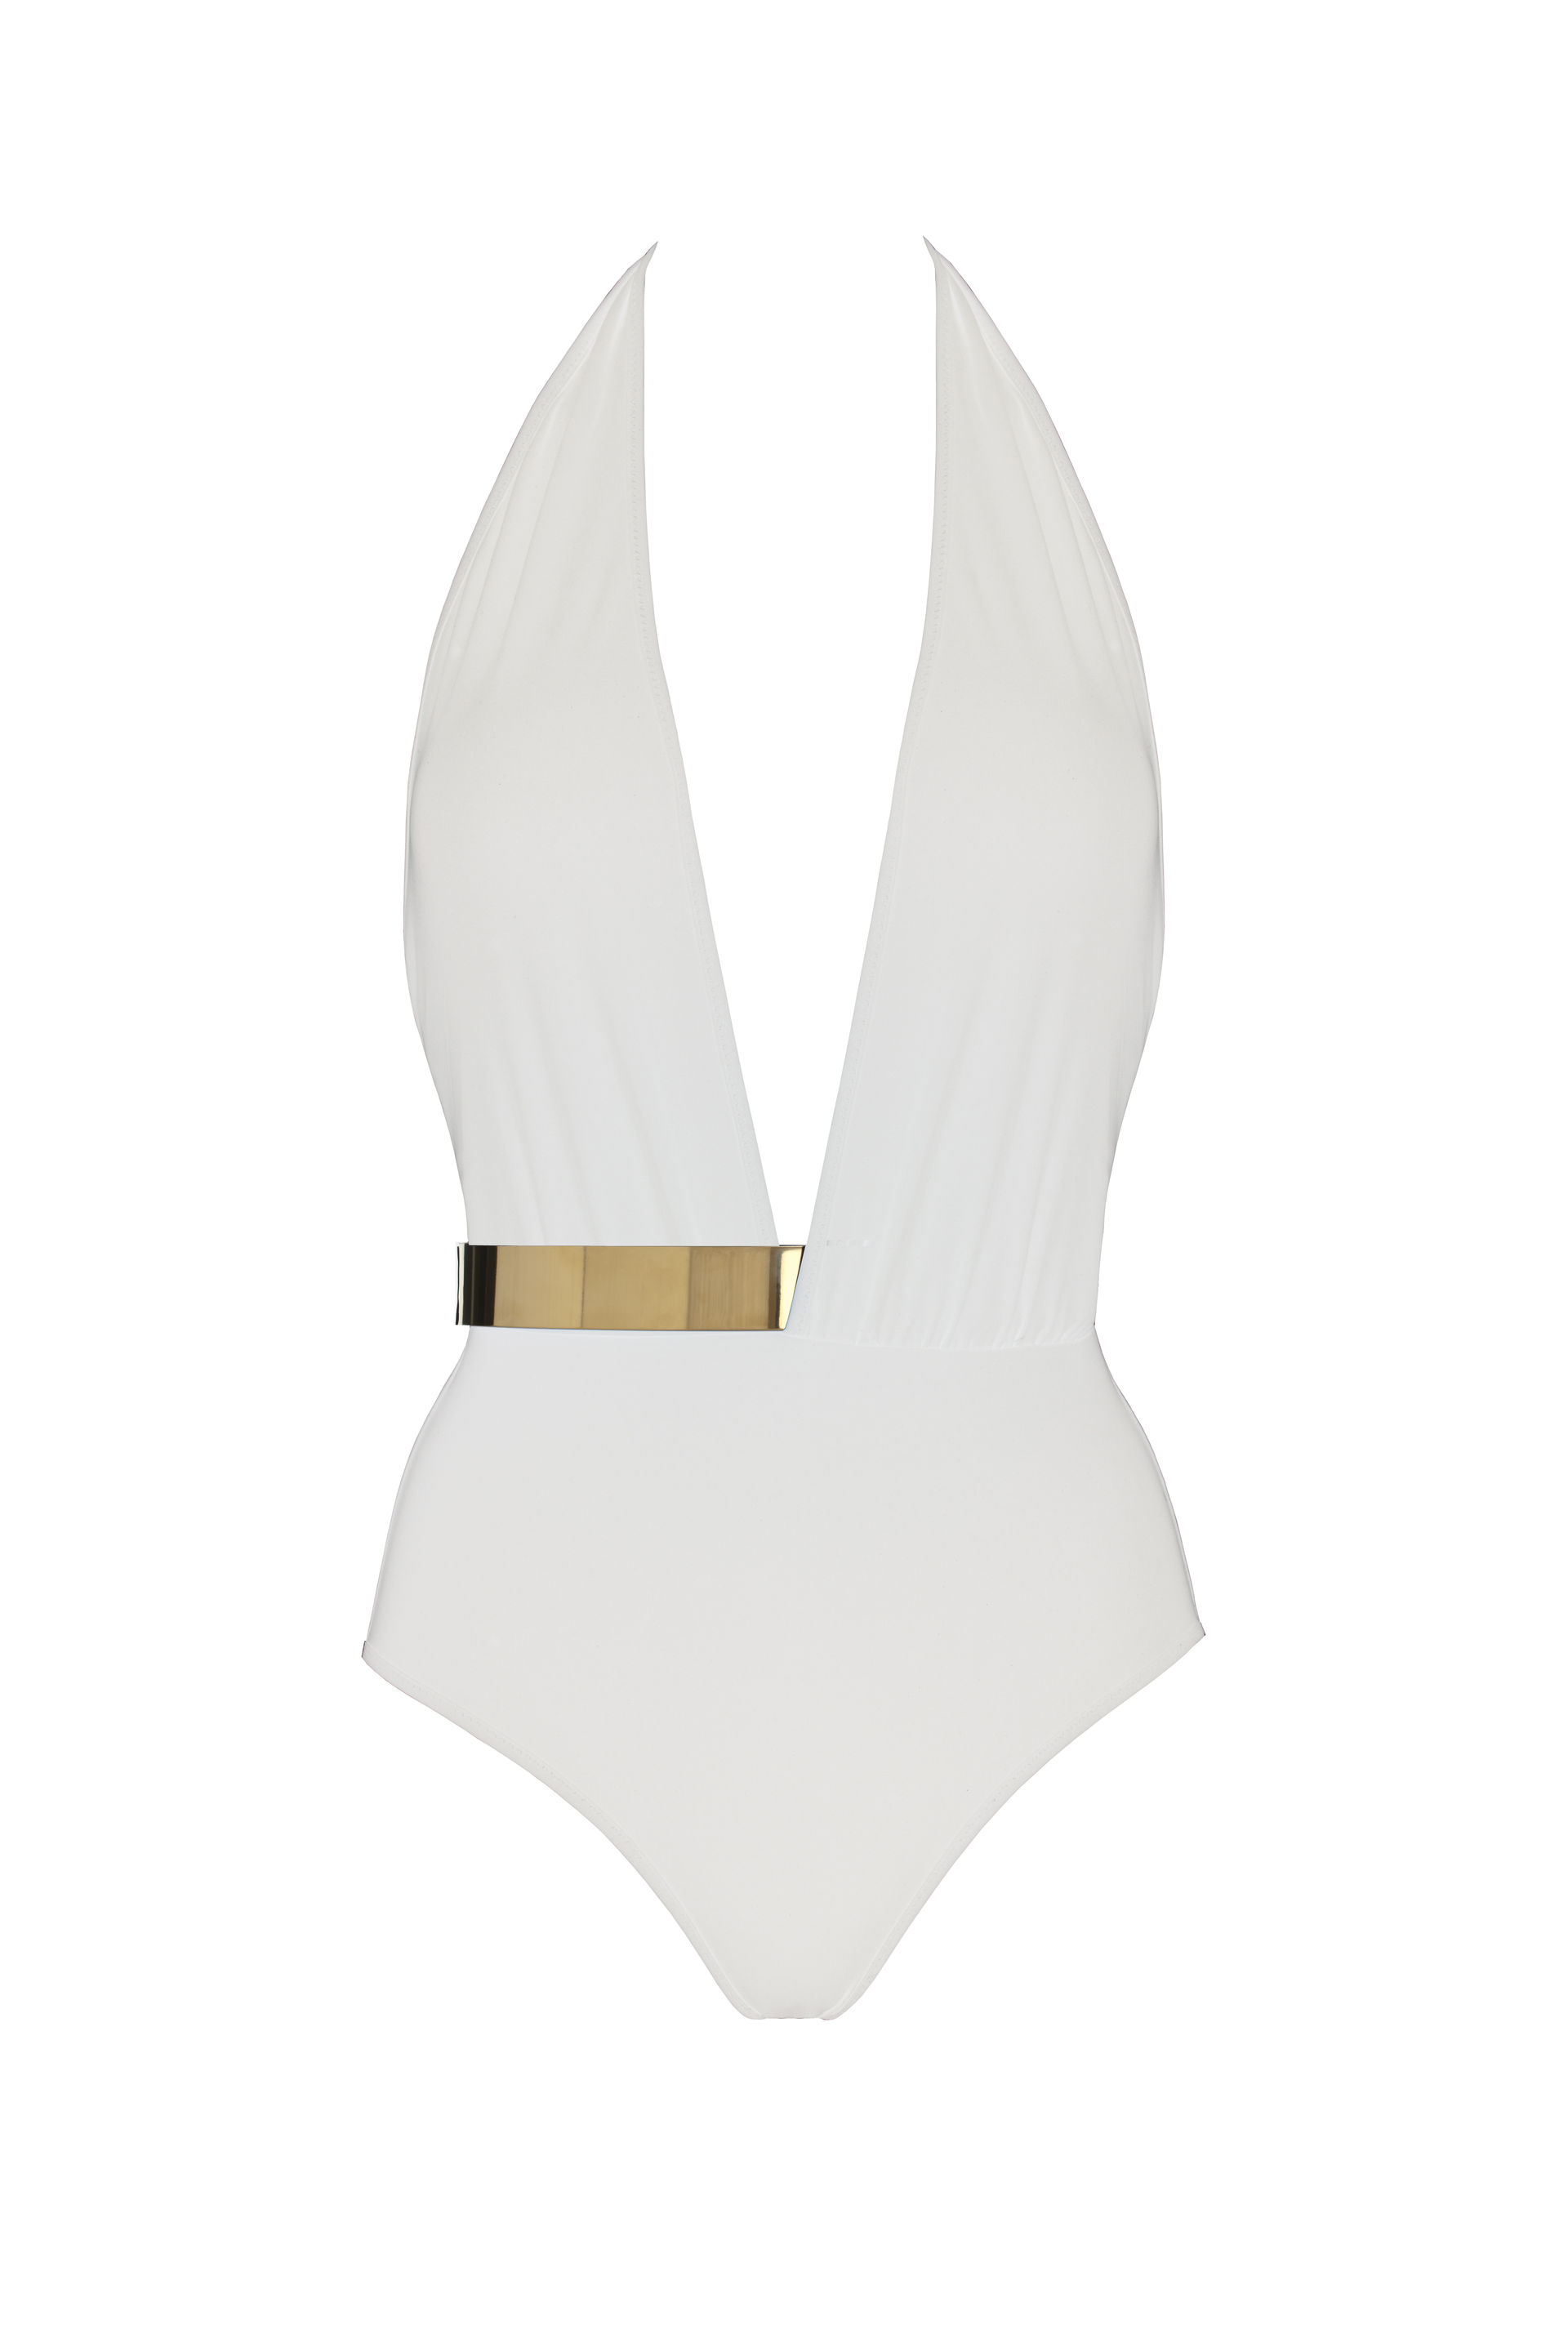 Moeva Bridget Swimsuit In White in Gold | Lyst